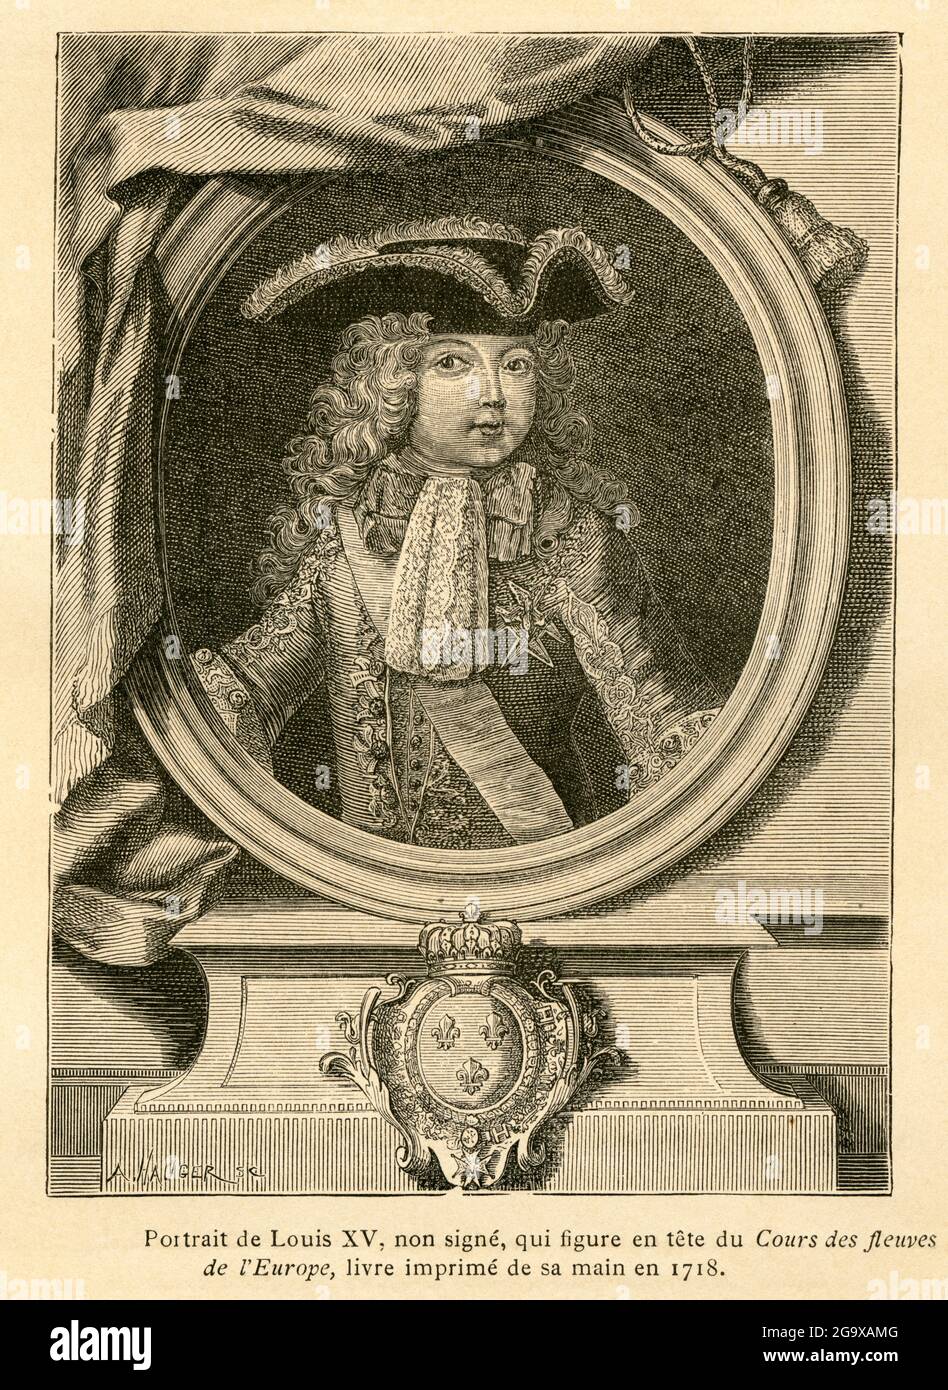 Louis XV de Francia, retrato, imagen de: 'L'Ancienne France, Le Livre', de M. P. Louisy, EL COPYRIGHT DEL ARTISTA NO TIENE QUE SER ACLARADO Foto de stock